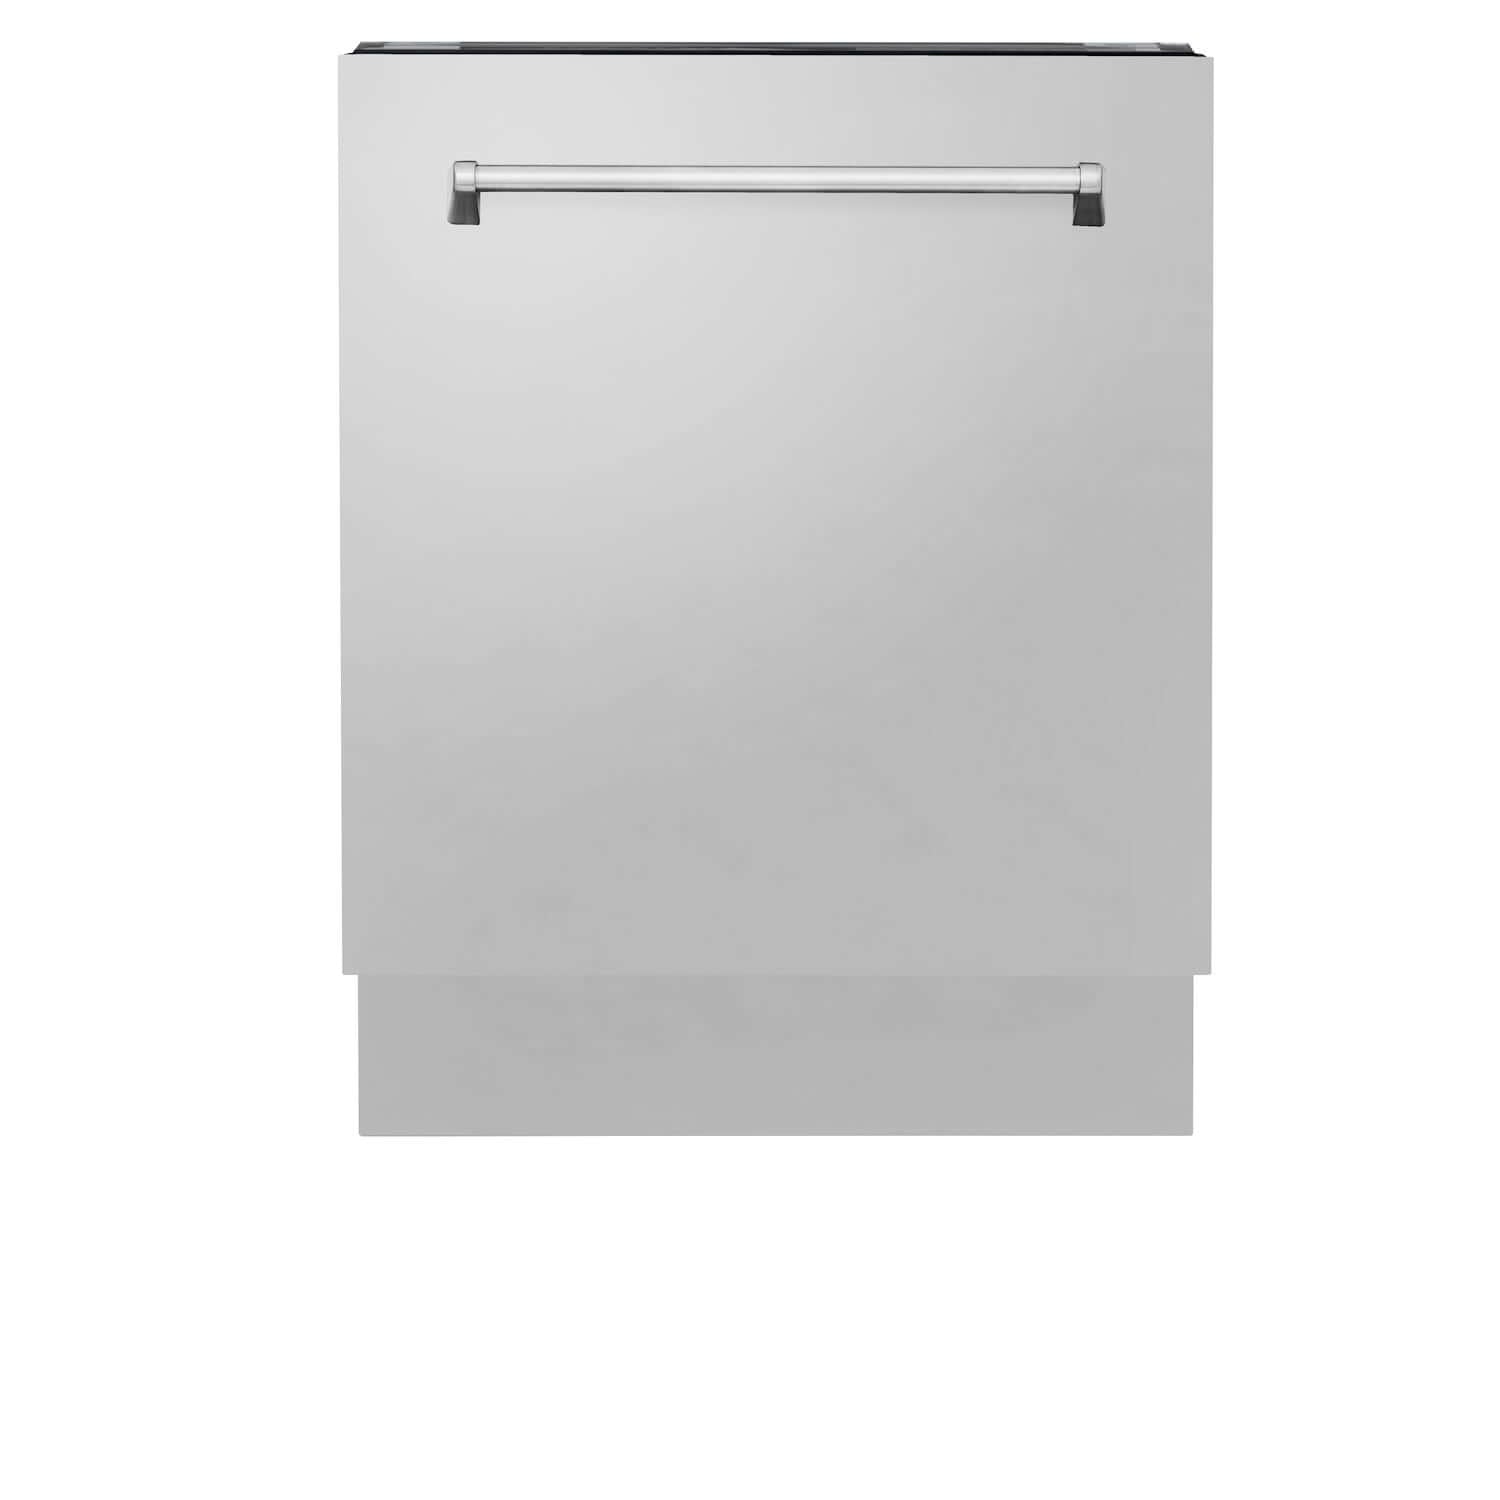 ZLINE 24" Stainless Steel Dishwasher front.